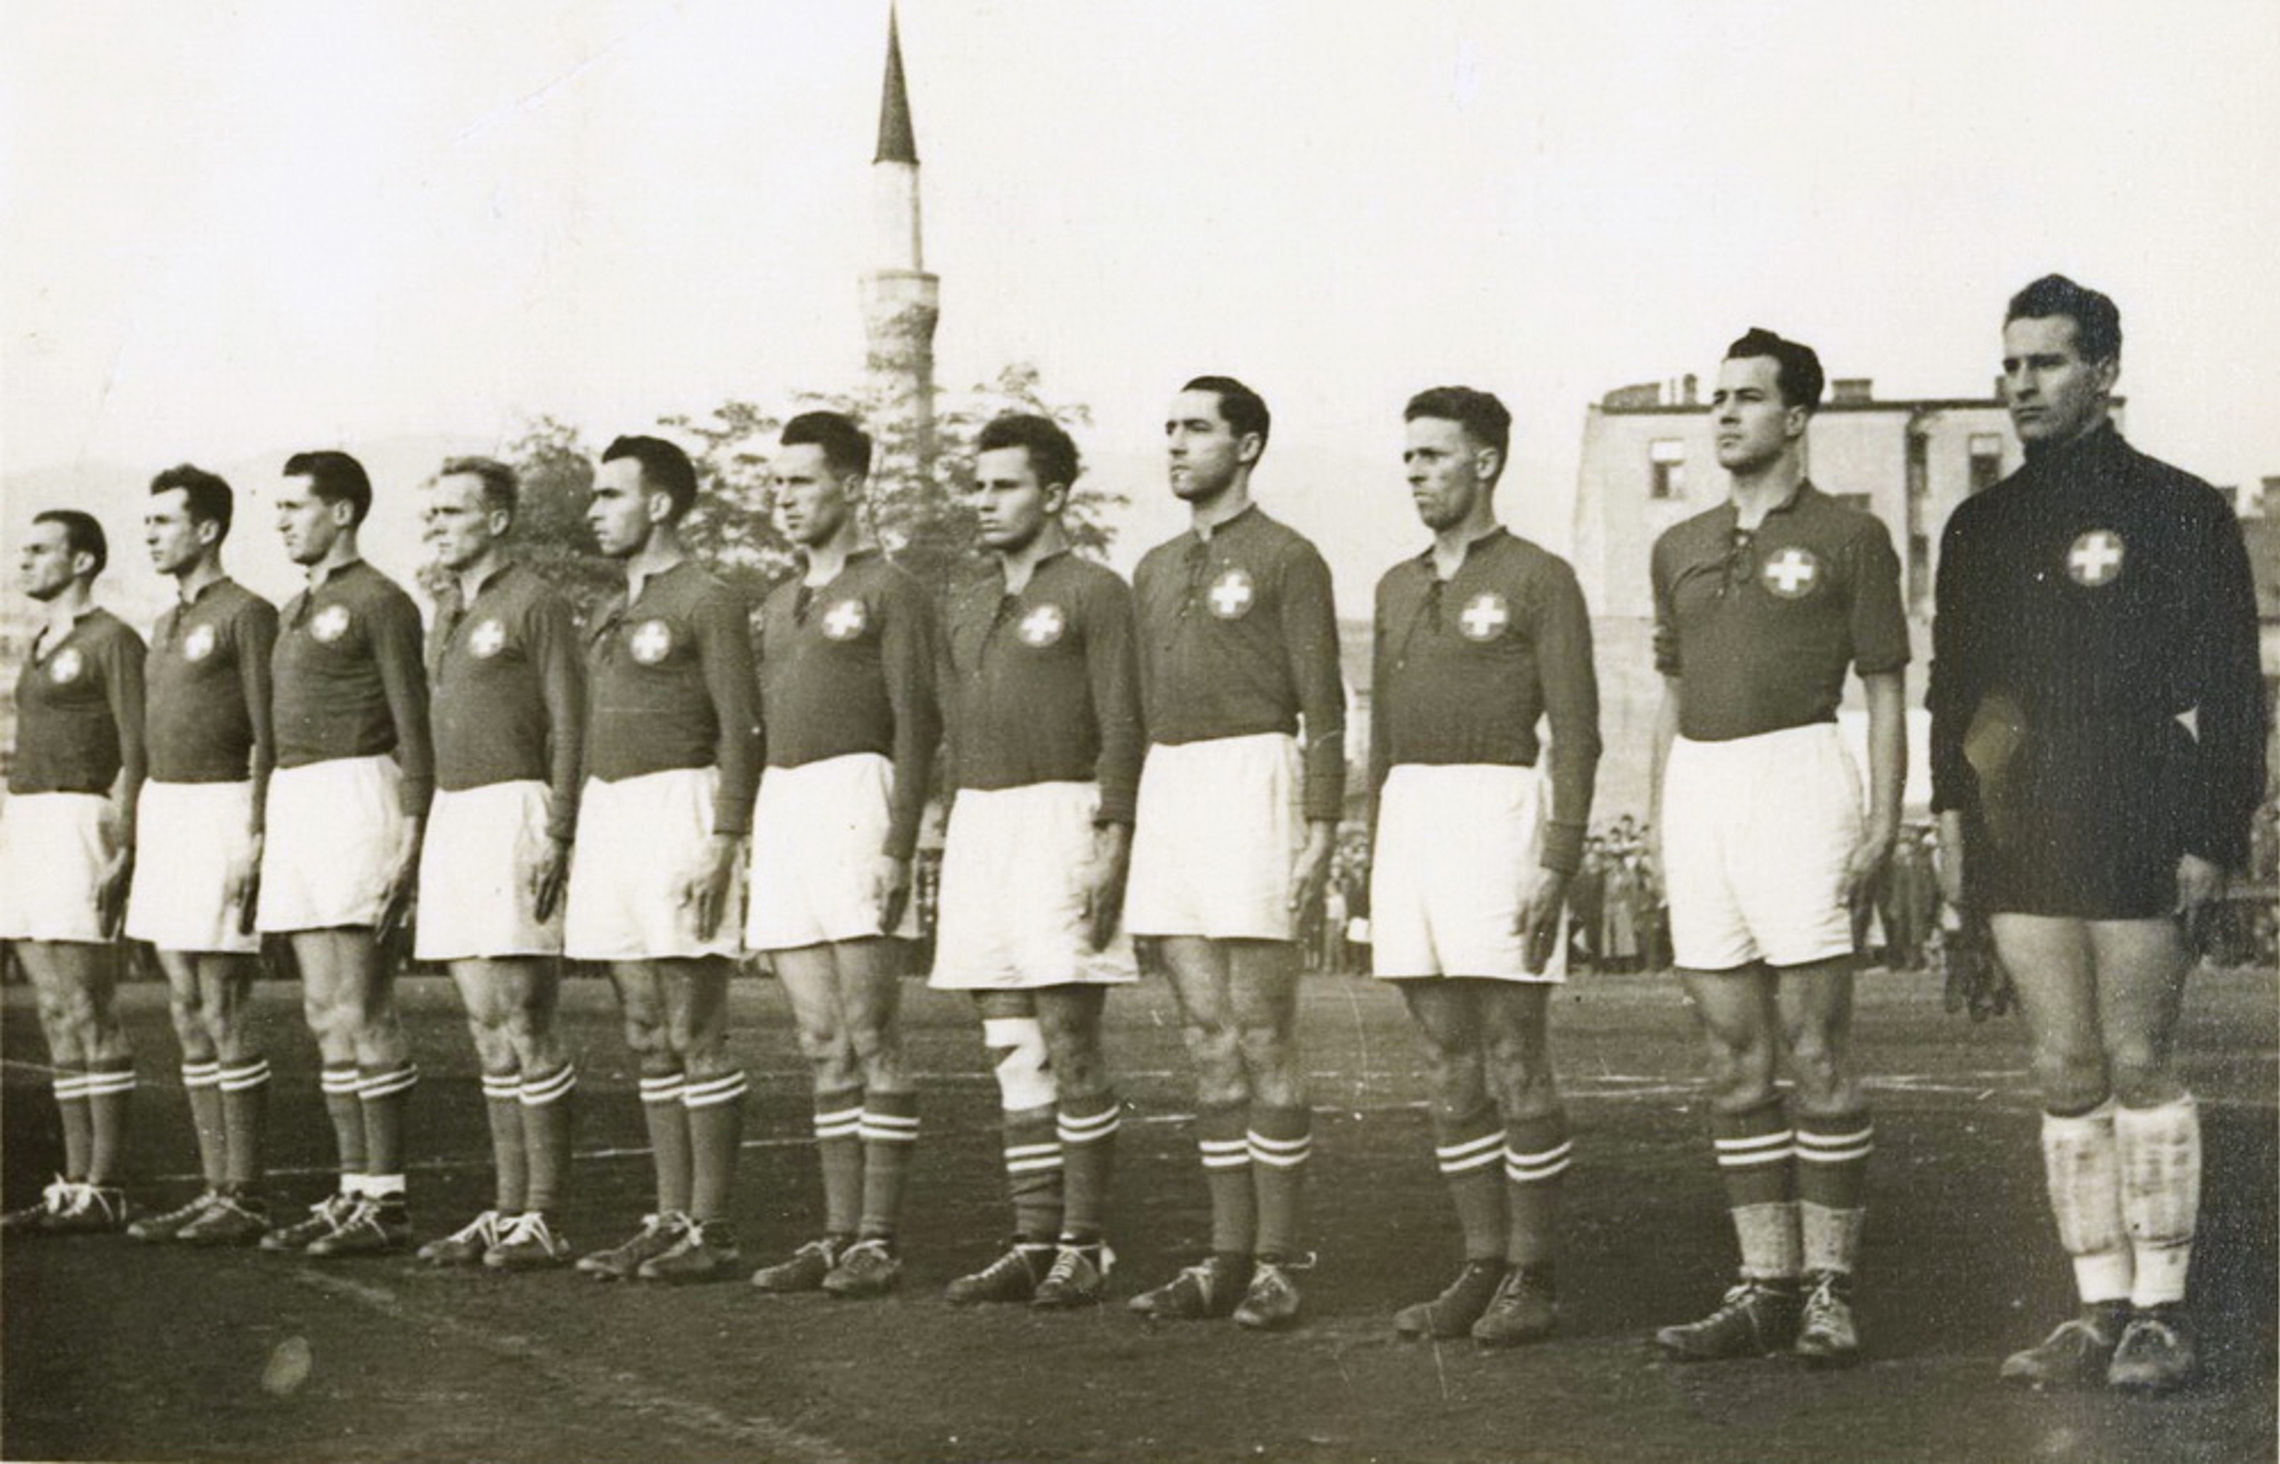 18.10.1950 Yugoslawien - Schweiz 7:12 (4:6) in Sarajewo, 8000 Zuschauer, Schiedsrichter Klima (AUT)